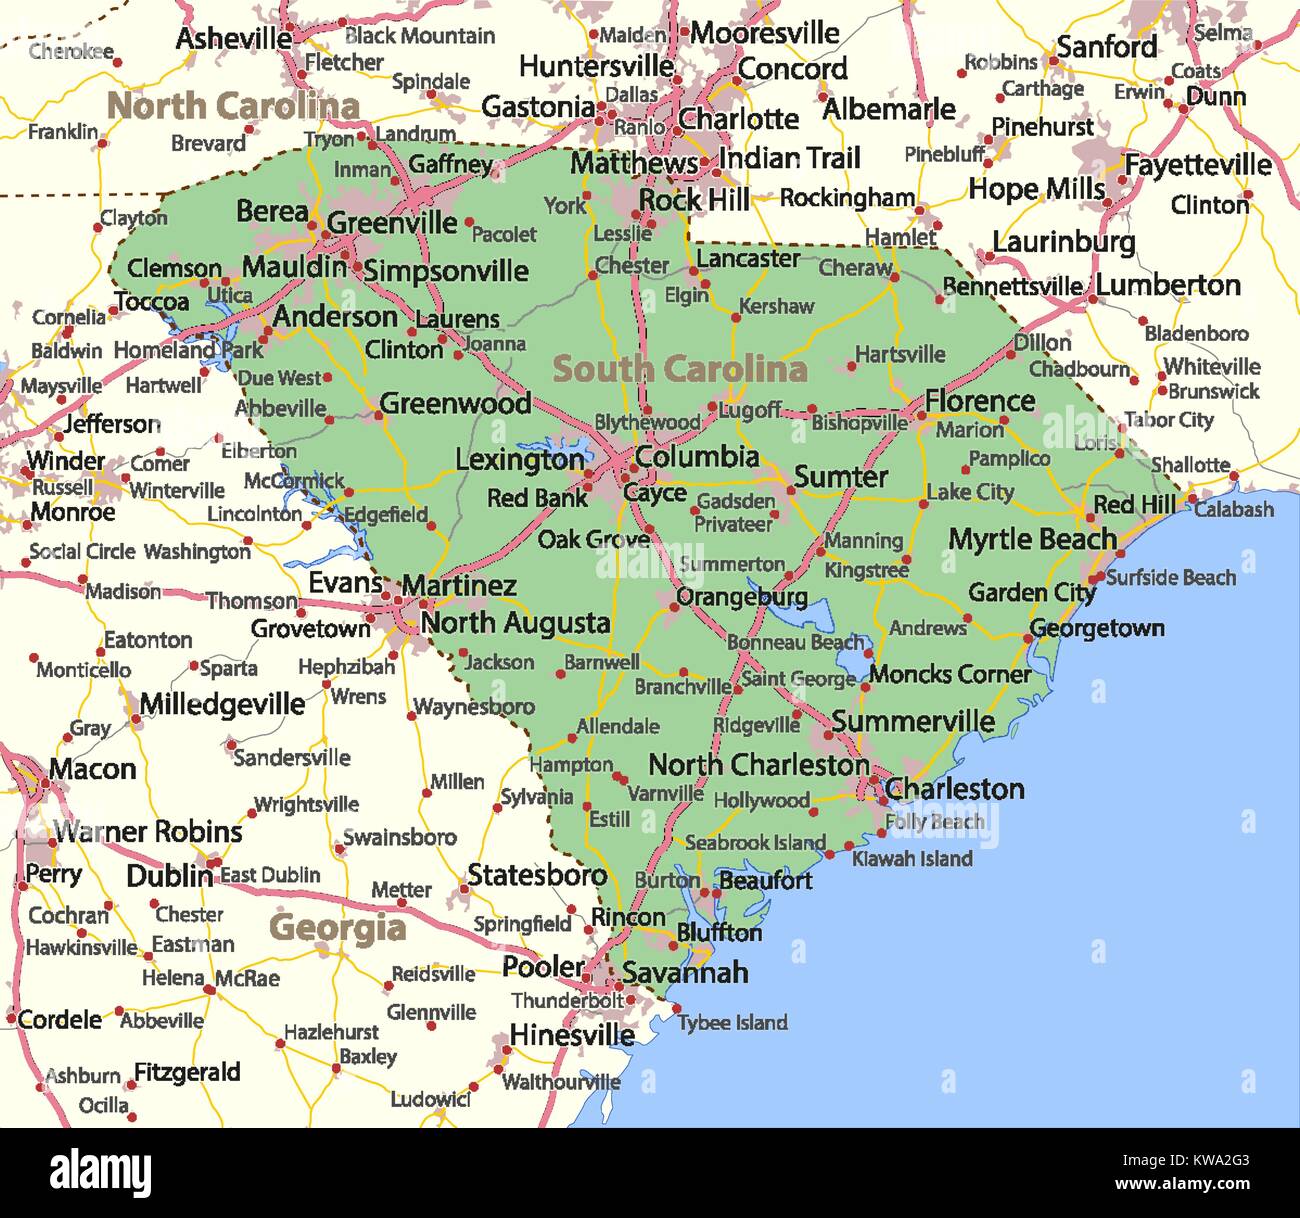 Mappa di Carolina del Sud. Mostra i confini, zone urbane, nomi di località, strade e autostrade. Proiezione: proiezione di Mercatore. Illustrazione Vettoriale